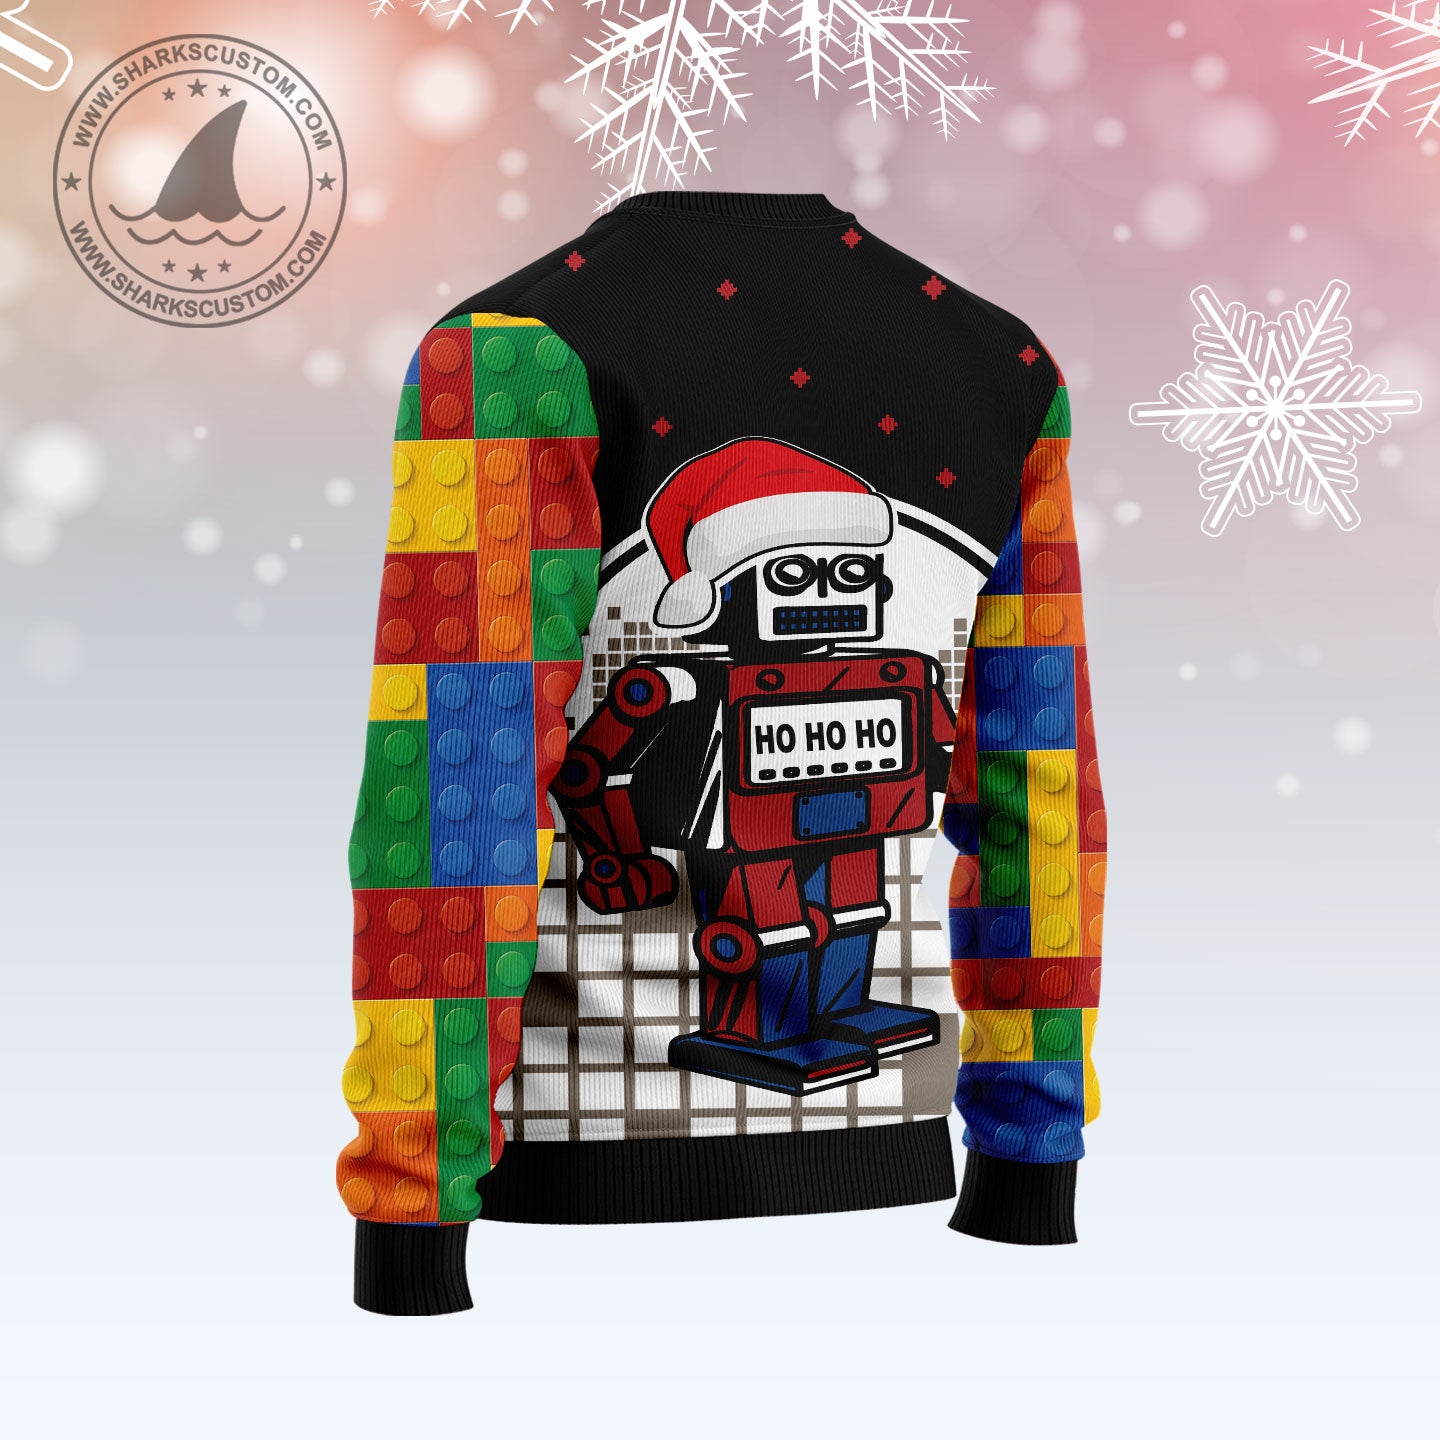 Lego Hohoho T1910 Ugly Christmas Sweater